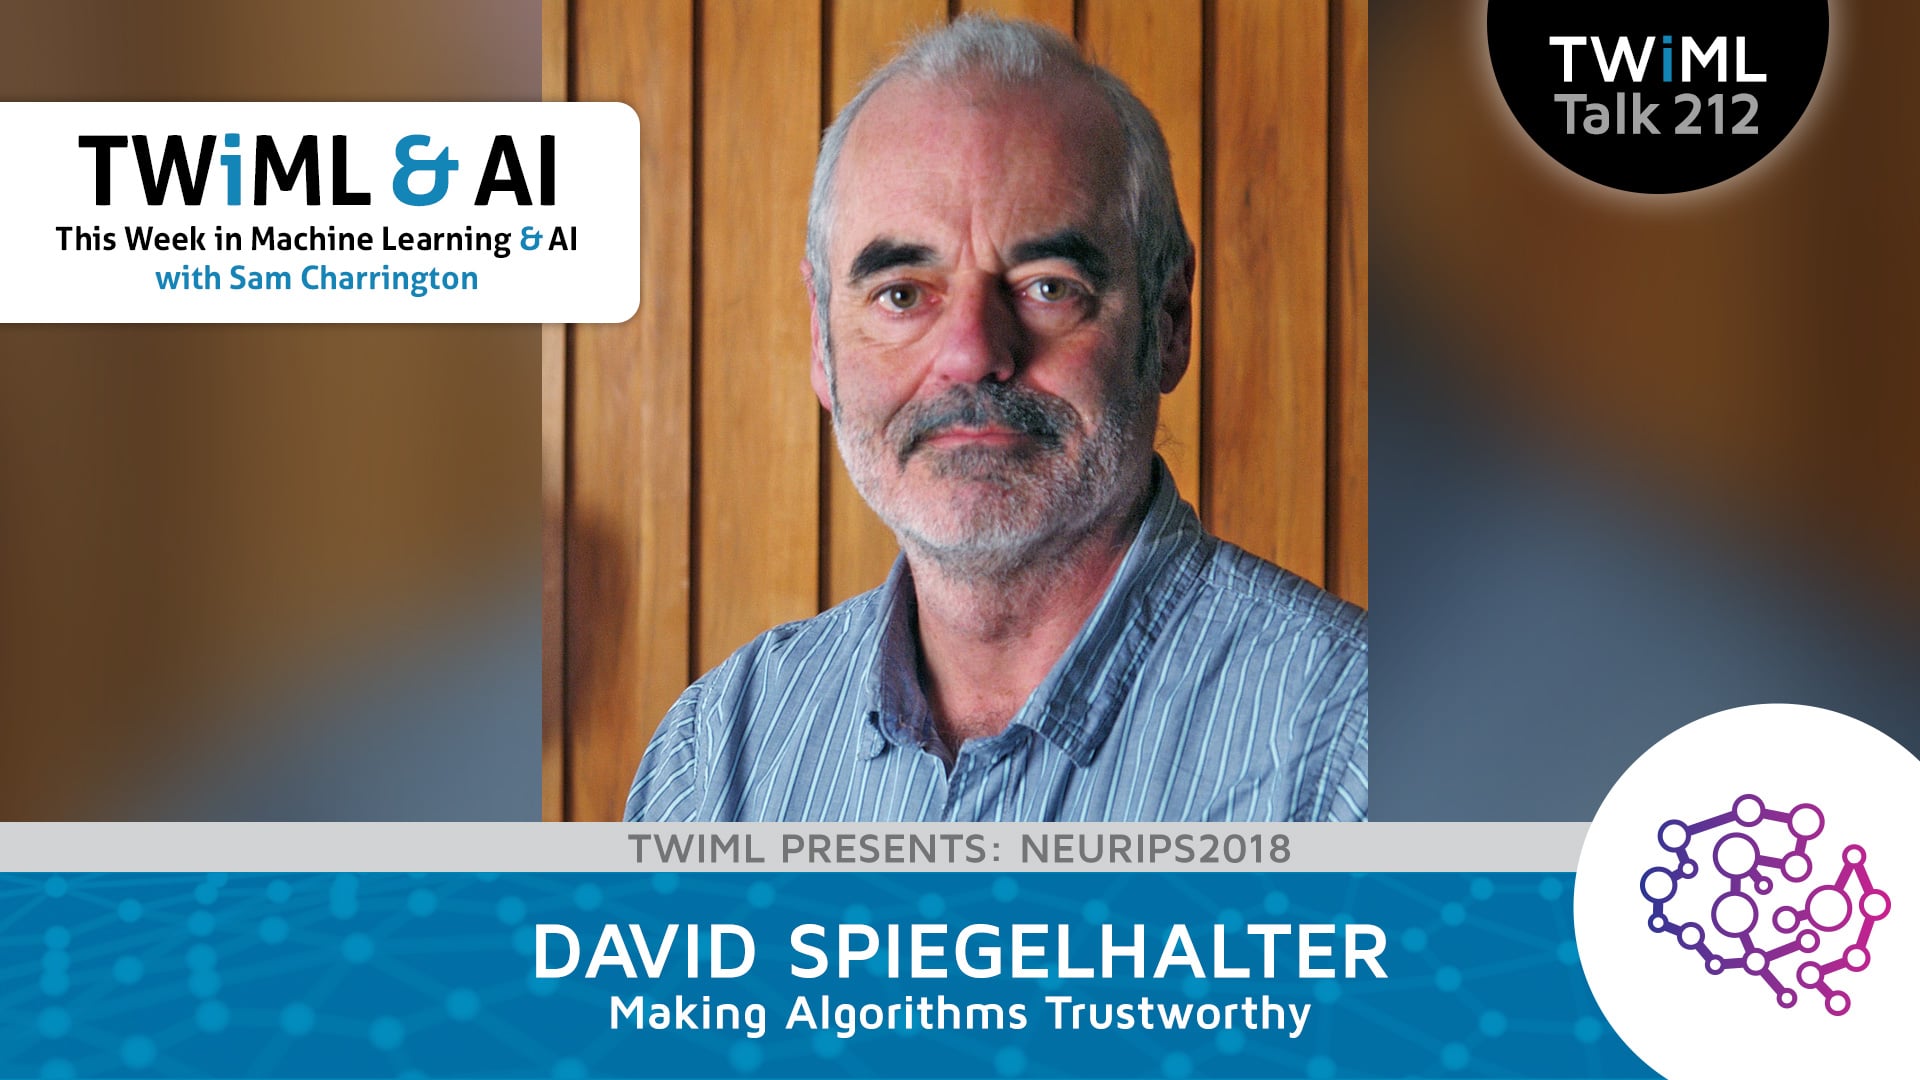 Banner Image: David Spiegelhalter - Podcast Interview